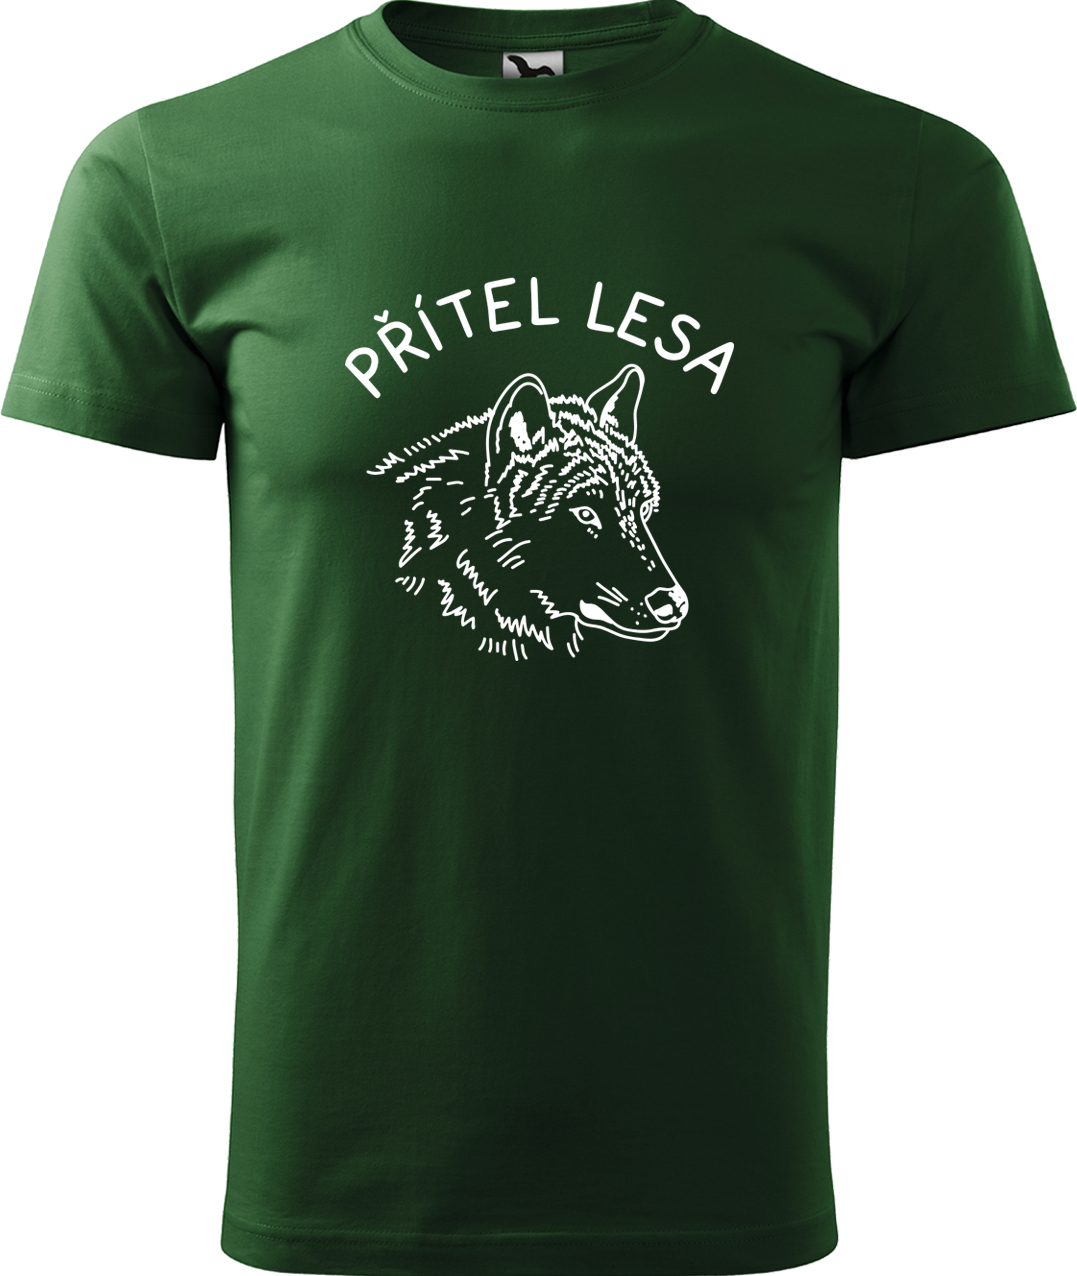 Pánské tričko s vlkem - Přítel lesa Velikost: 3XL, Barva: Lahvově zelená (06), Střih: pánský